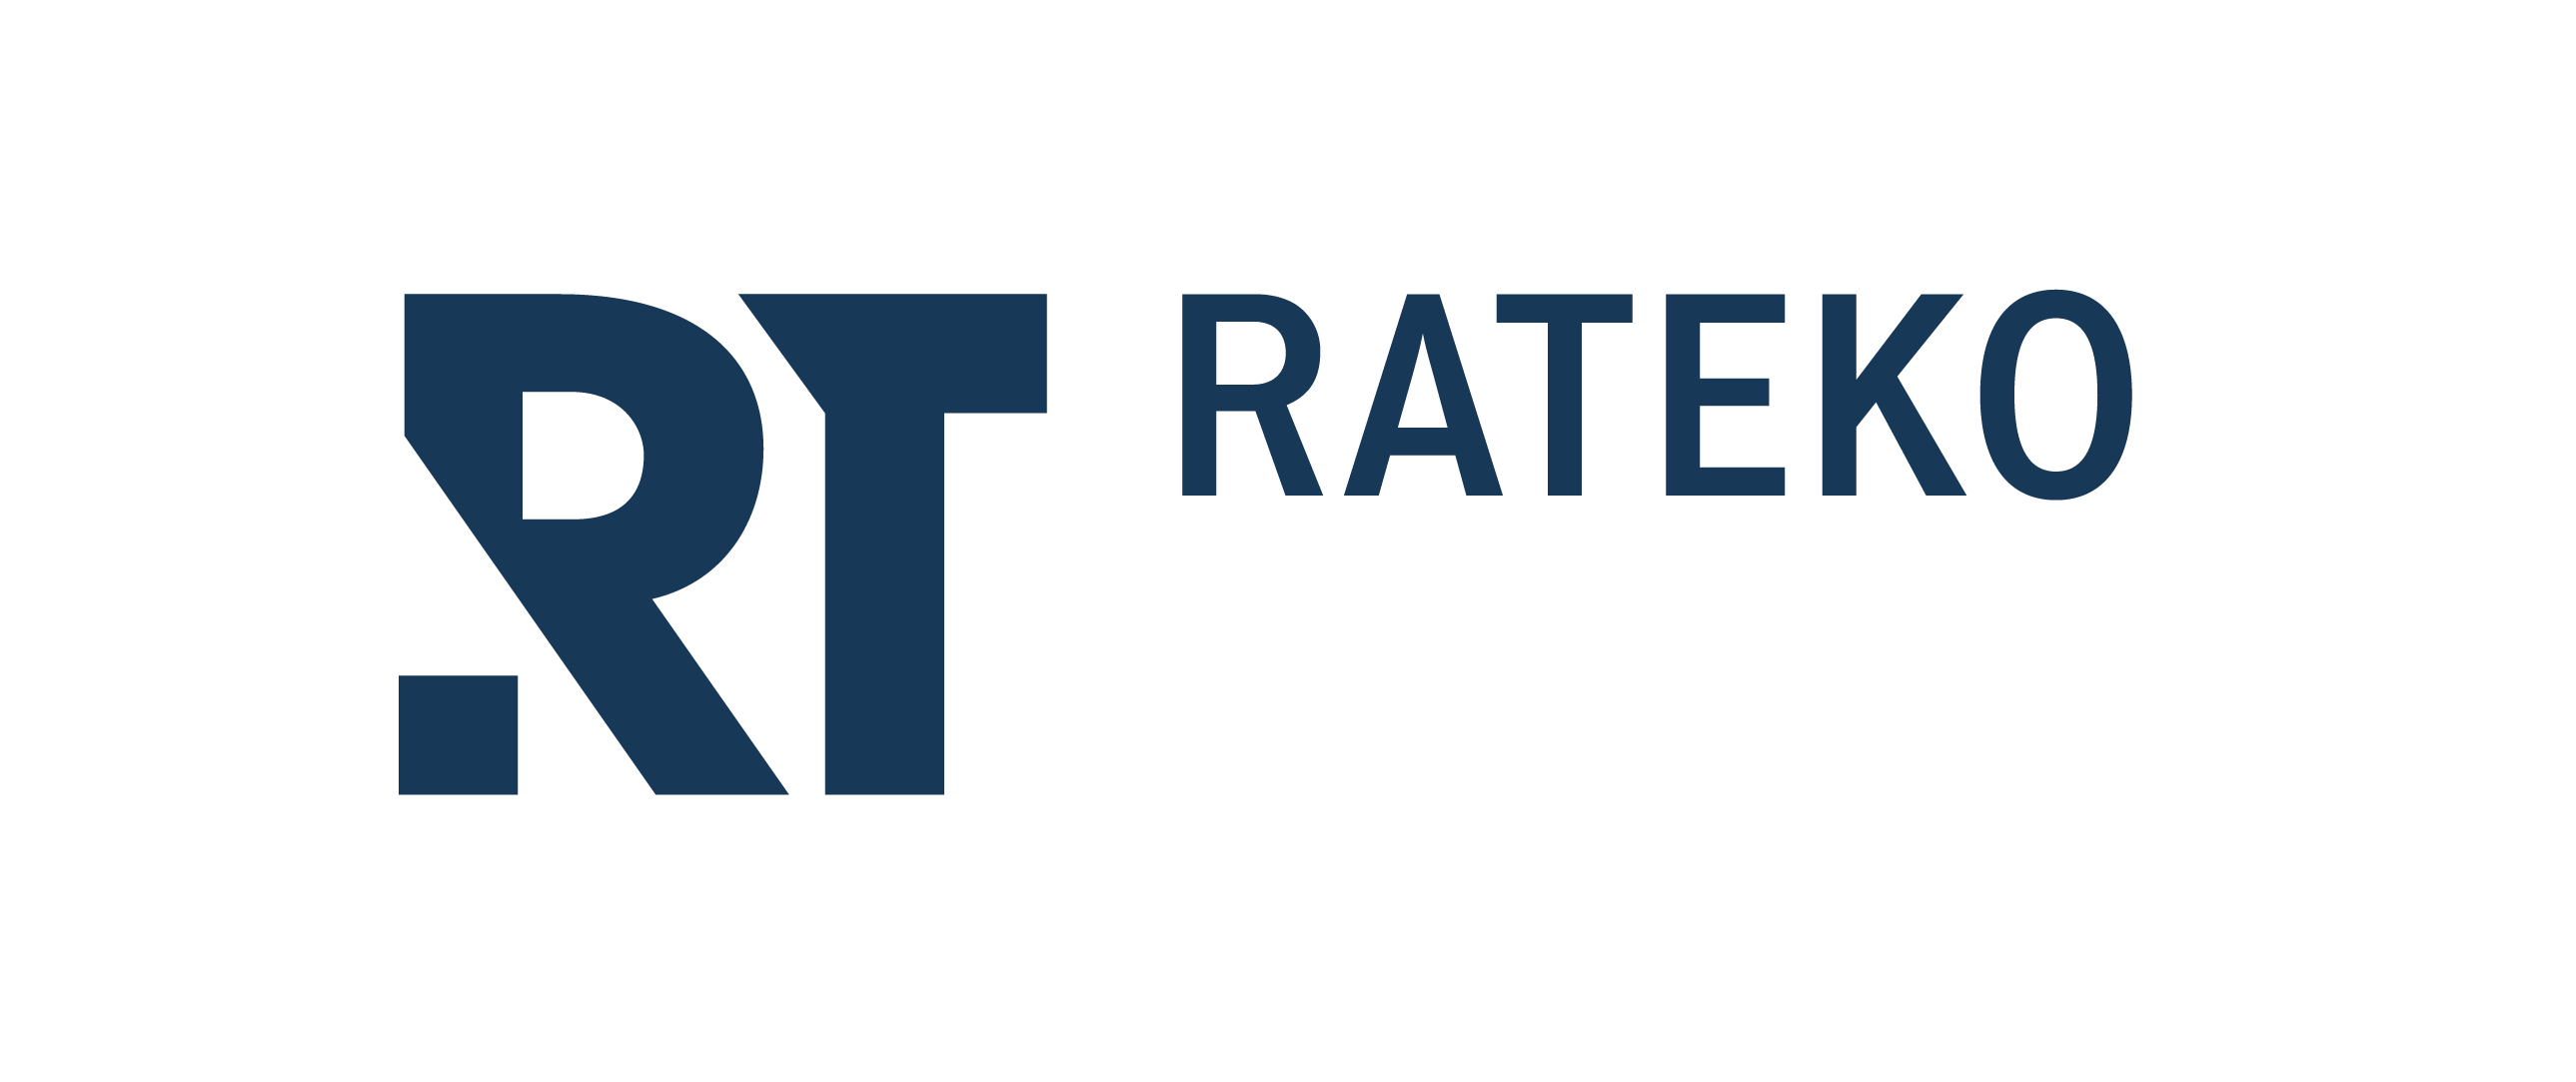 Rateko_logo